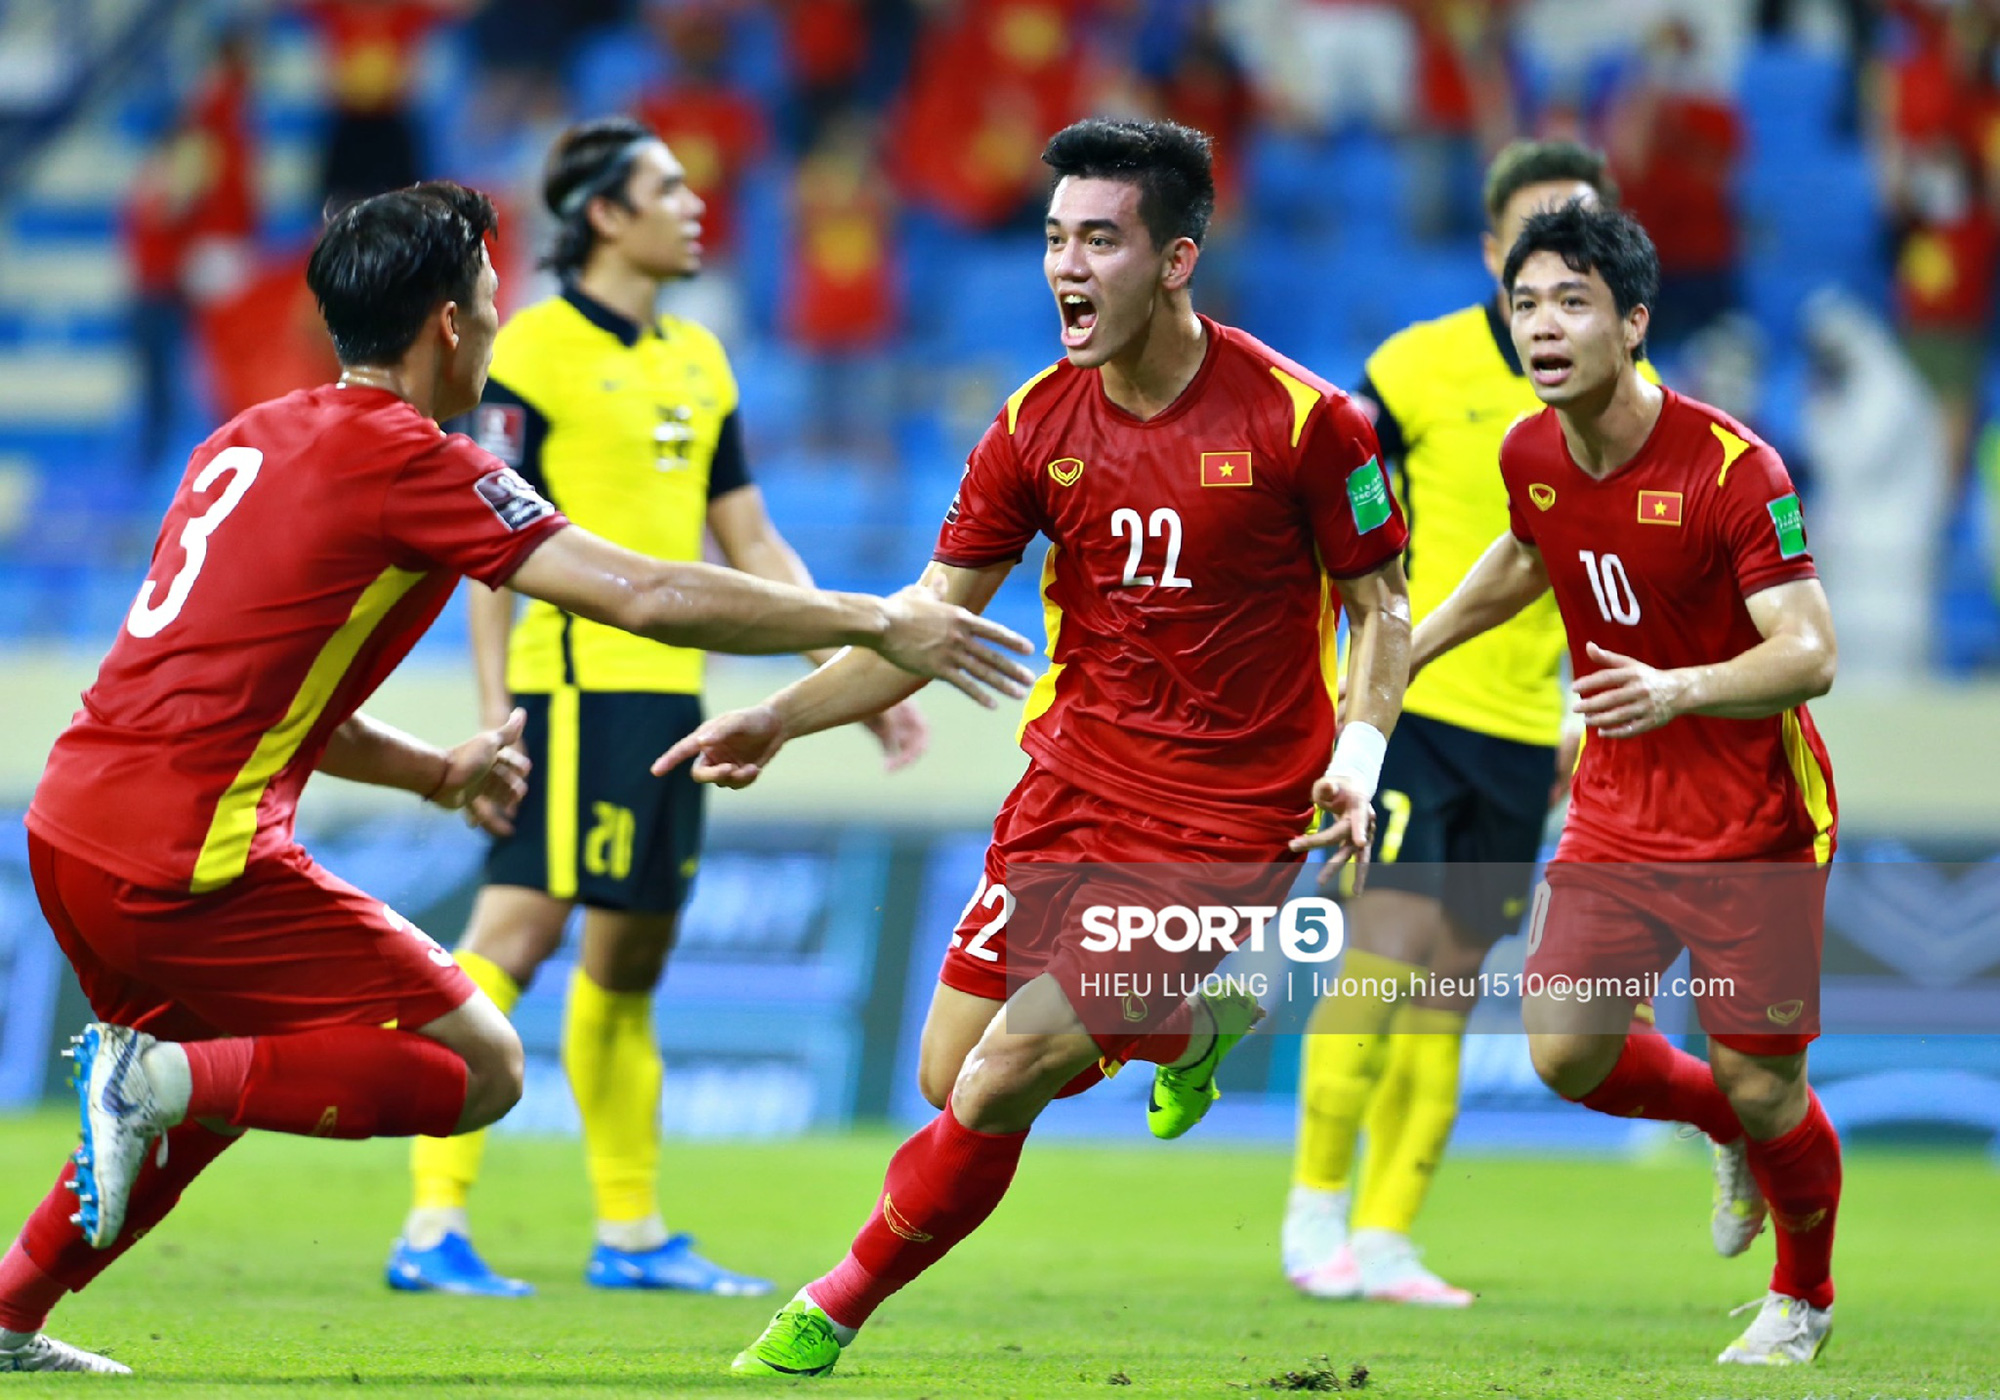 Khoảnh khắc Tiến Linh ghi bàn đưa U23 Việt Nam vào chung kết bóng đá nam